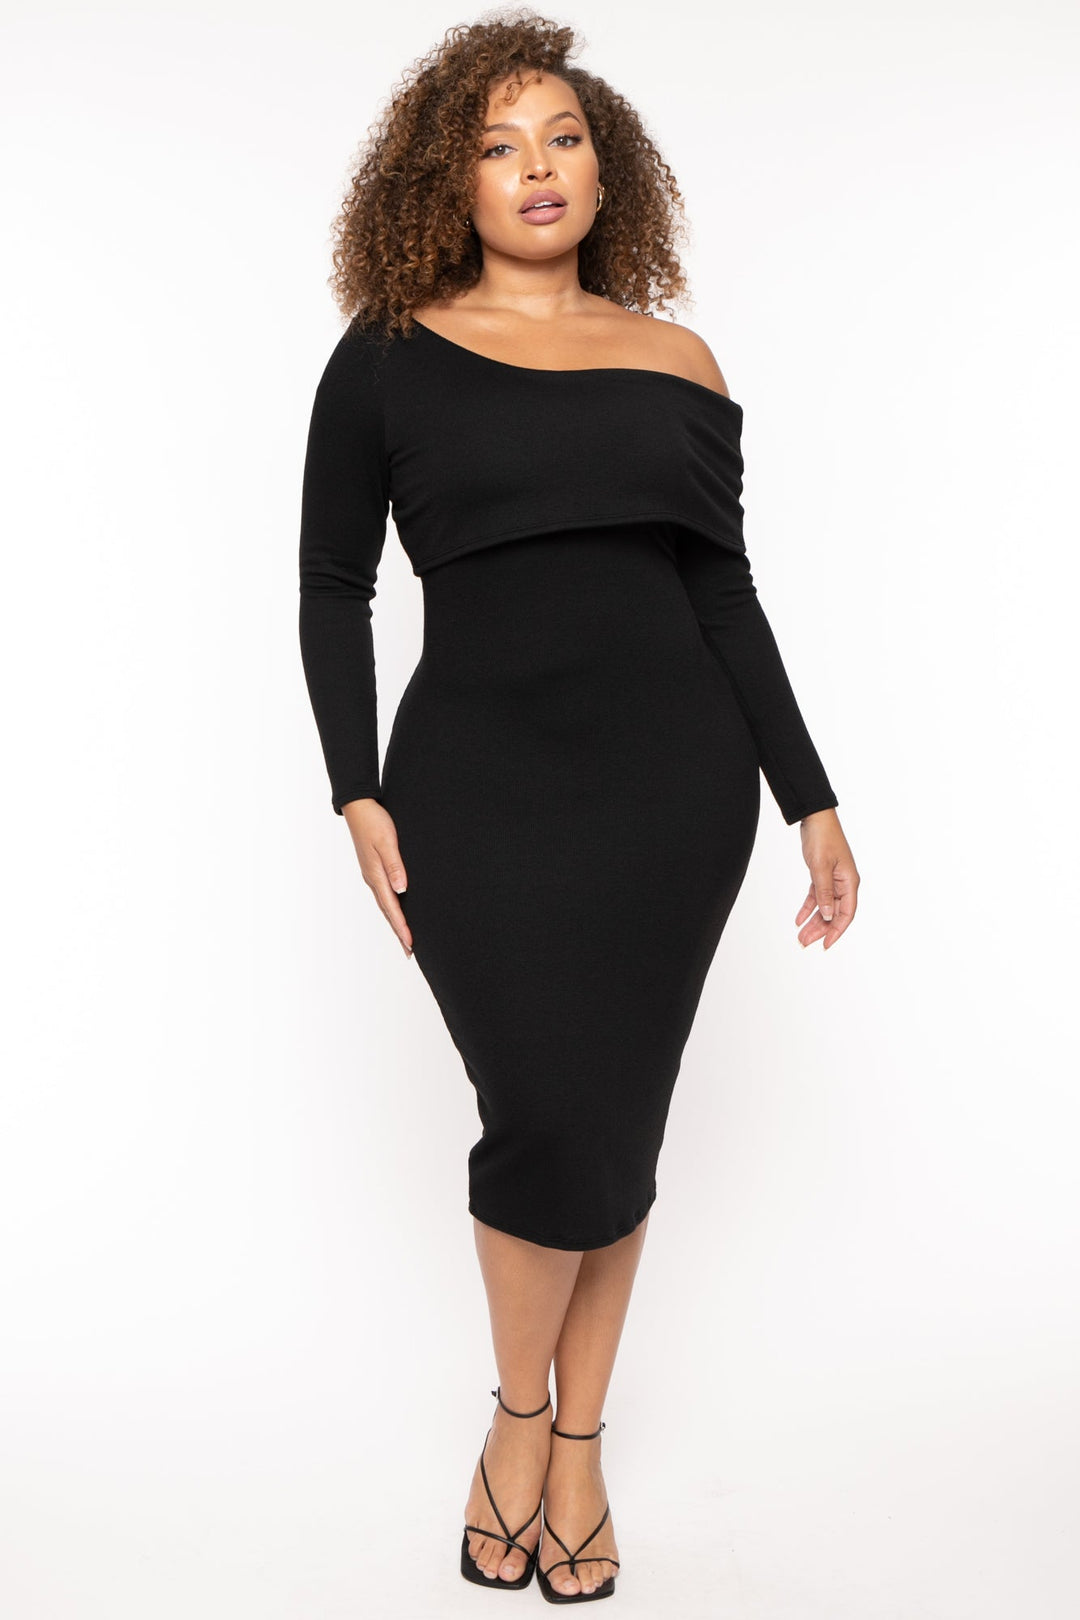 Plus Size Cerise One Shoulder Dress- Black – Curvy Sense